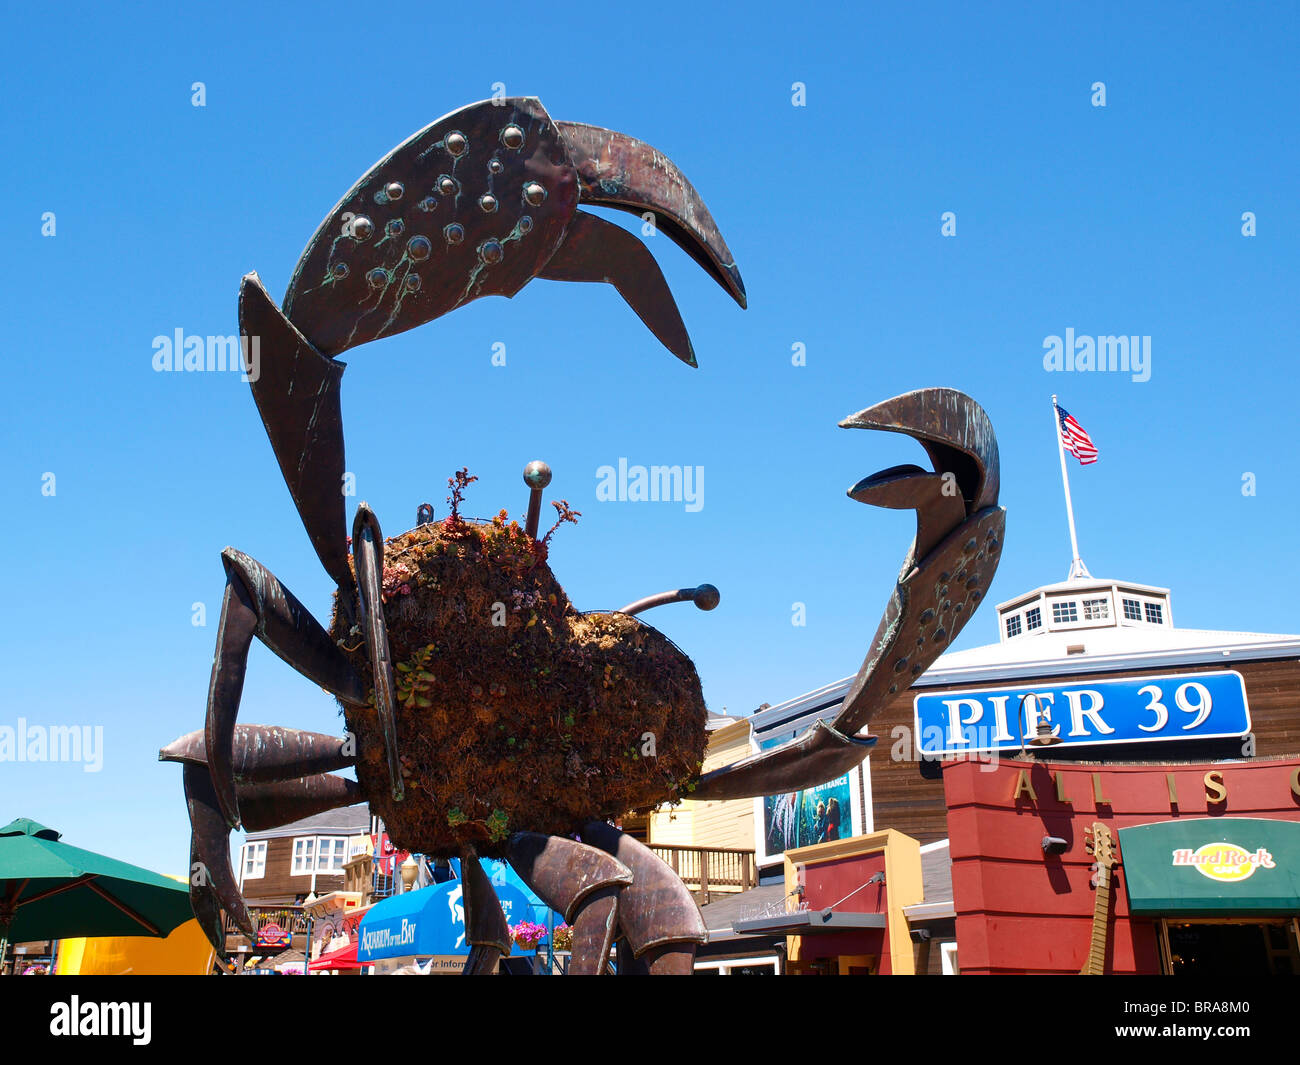 Riesenkrabbe Bildhauerei am Pier 39 Fishermans Wharf San Francisco Kalifornien USA Stockfoto